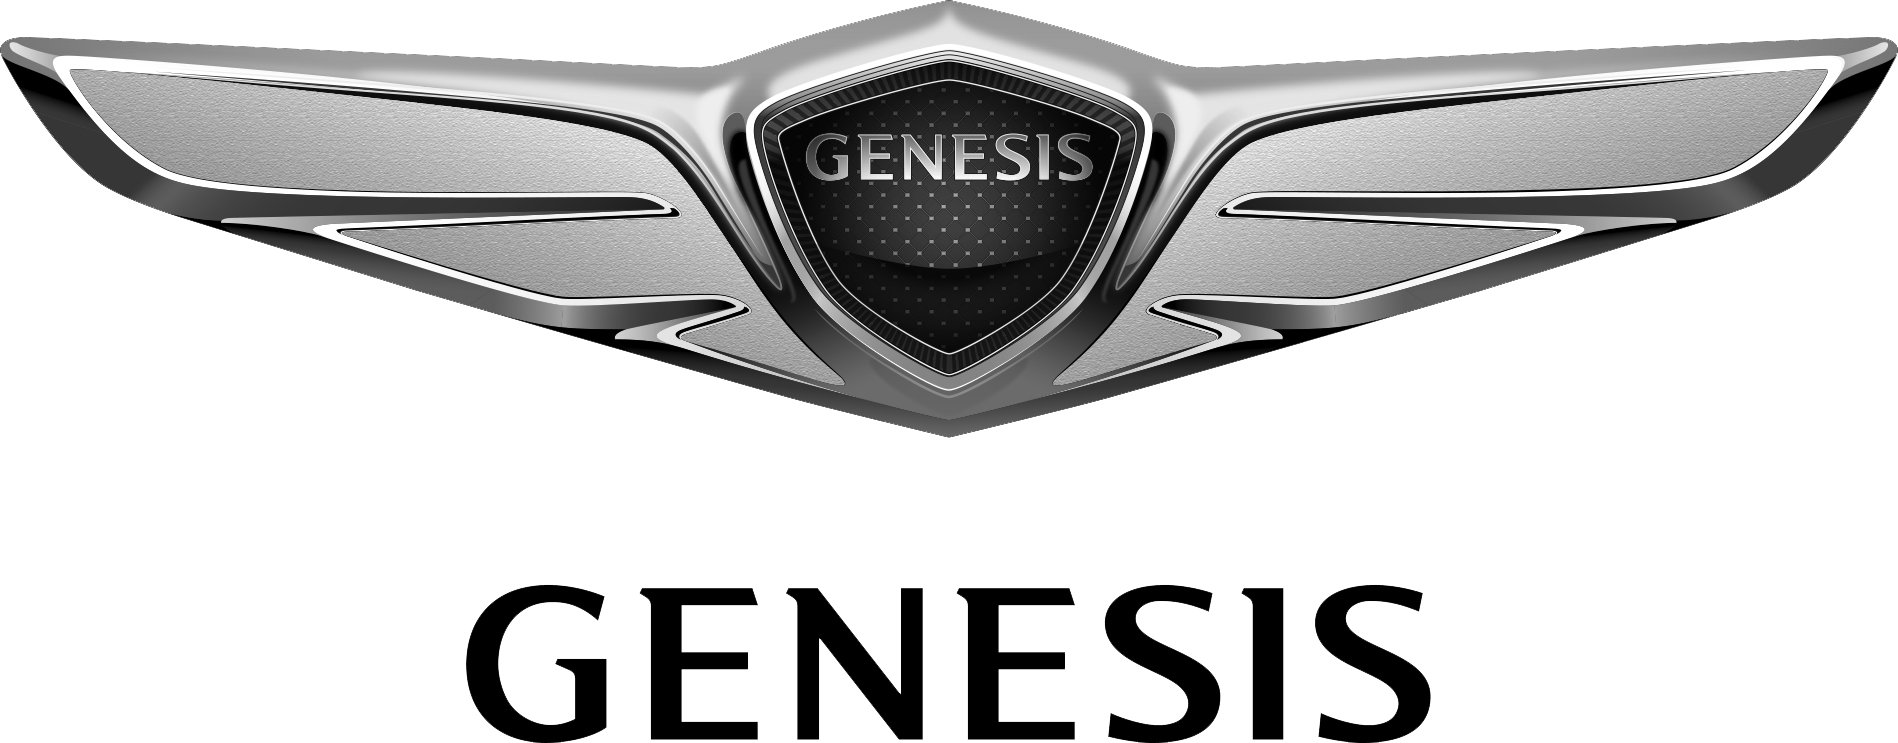 Genesis Coupe Logo - Hyundai Genesis Coupe HYUNDAI NEW THINKING Logo Image - Free Logo Png